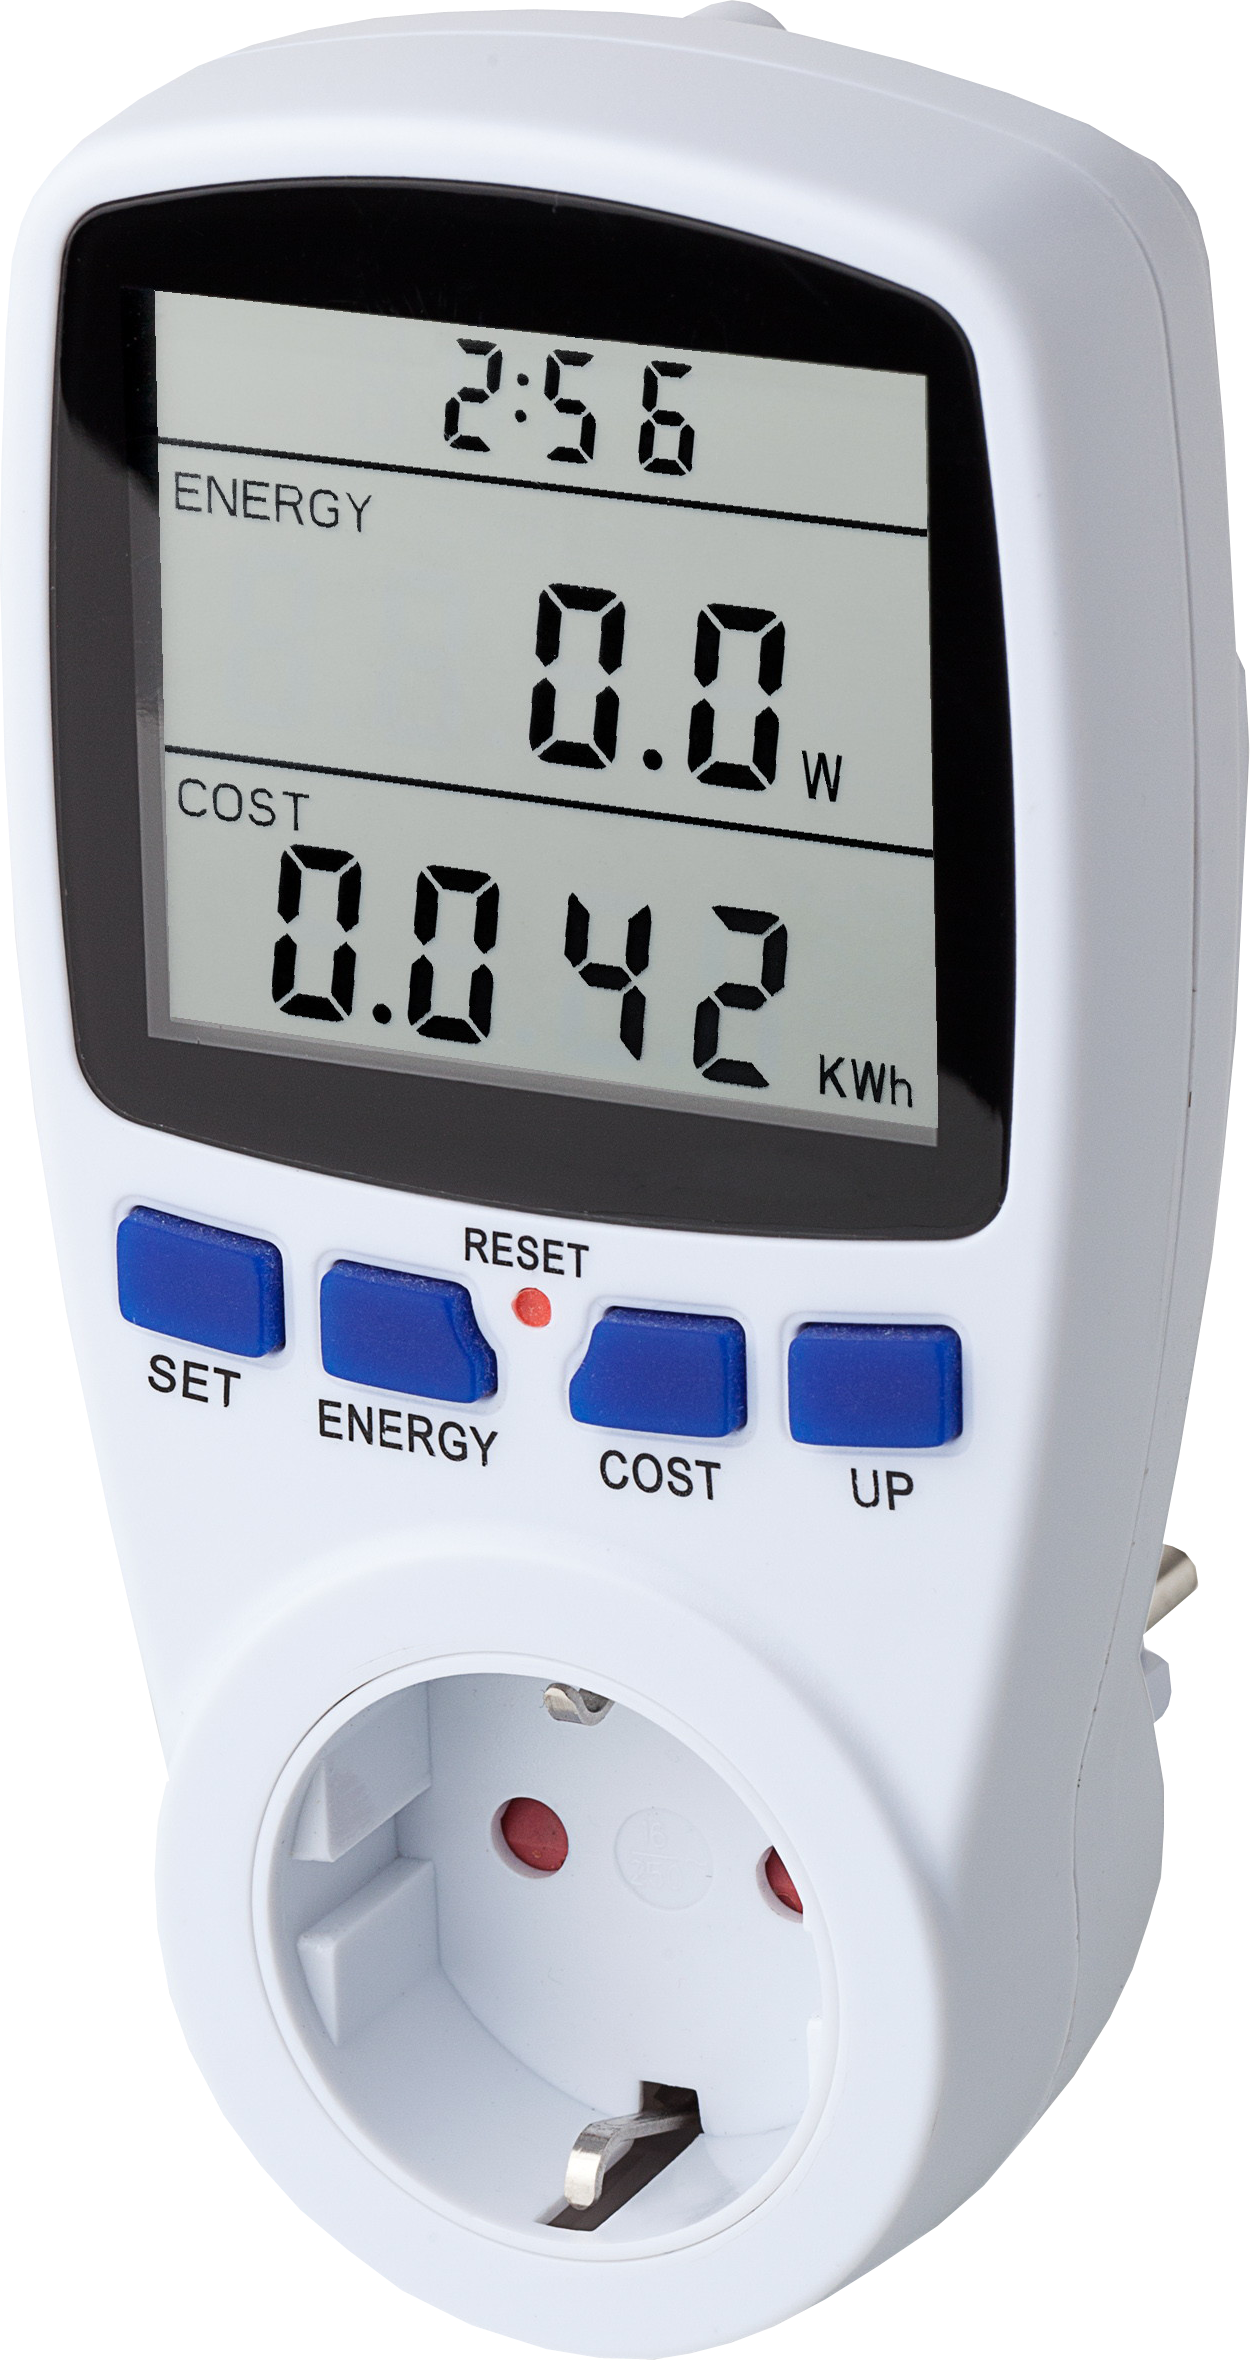 Ts836 uk-plug 230v 16a plug energy meter with lcd energy monitor.